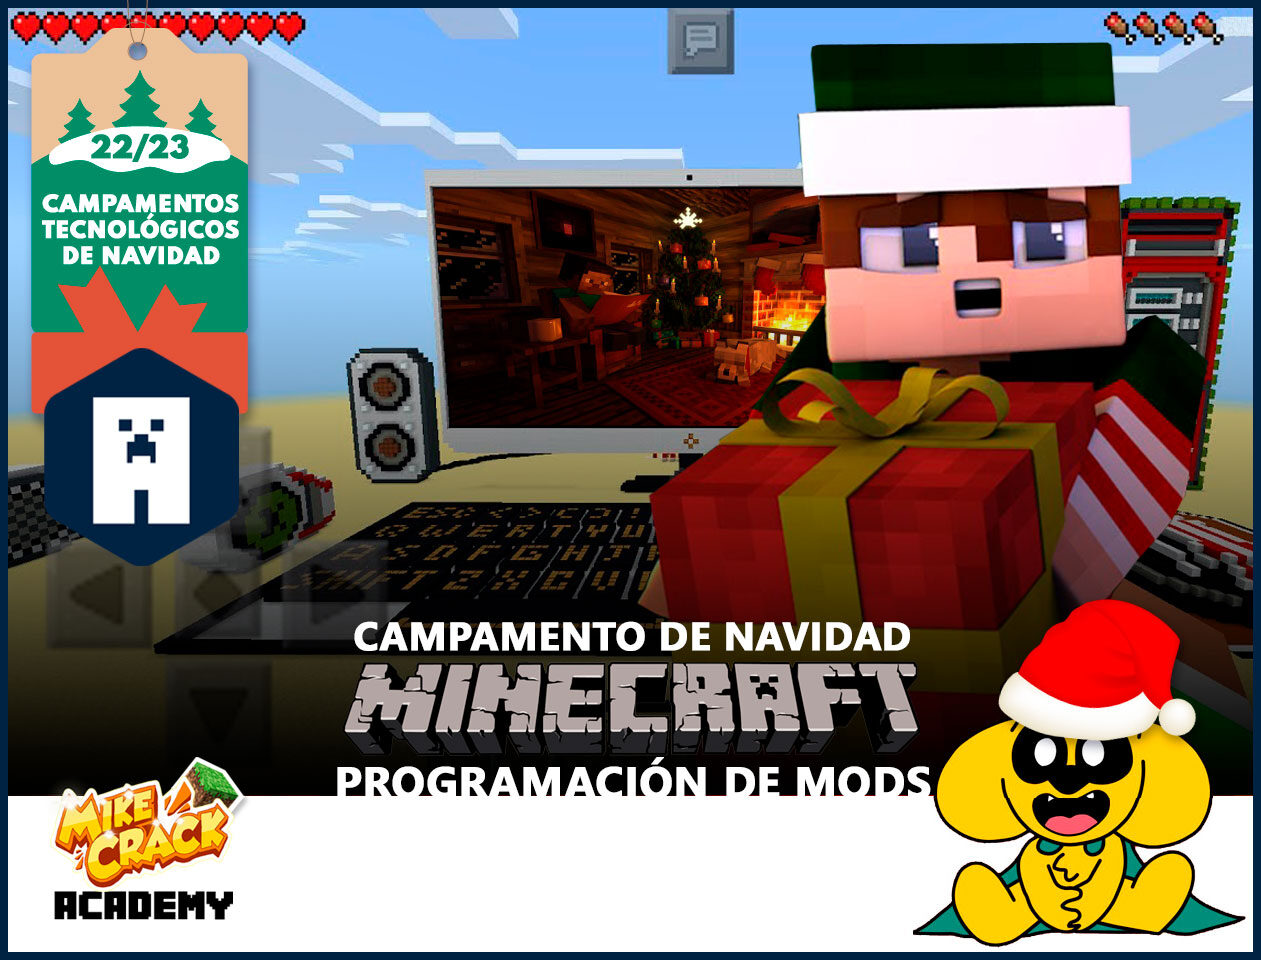 Mikecrack Academy - Campamento de Navidad - Minecraft: Programación de Mods